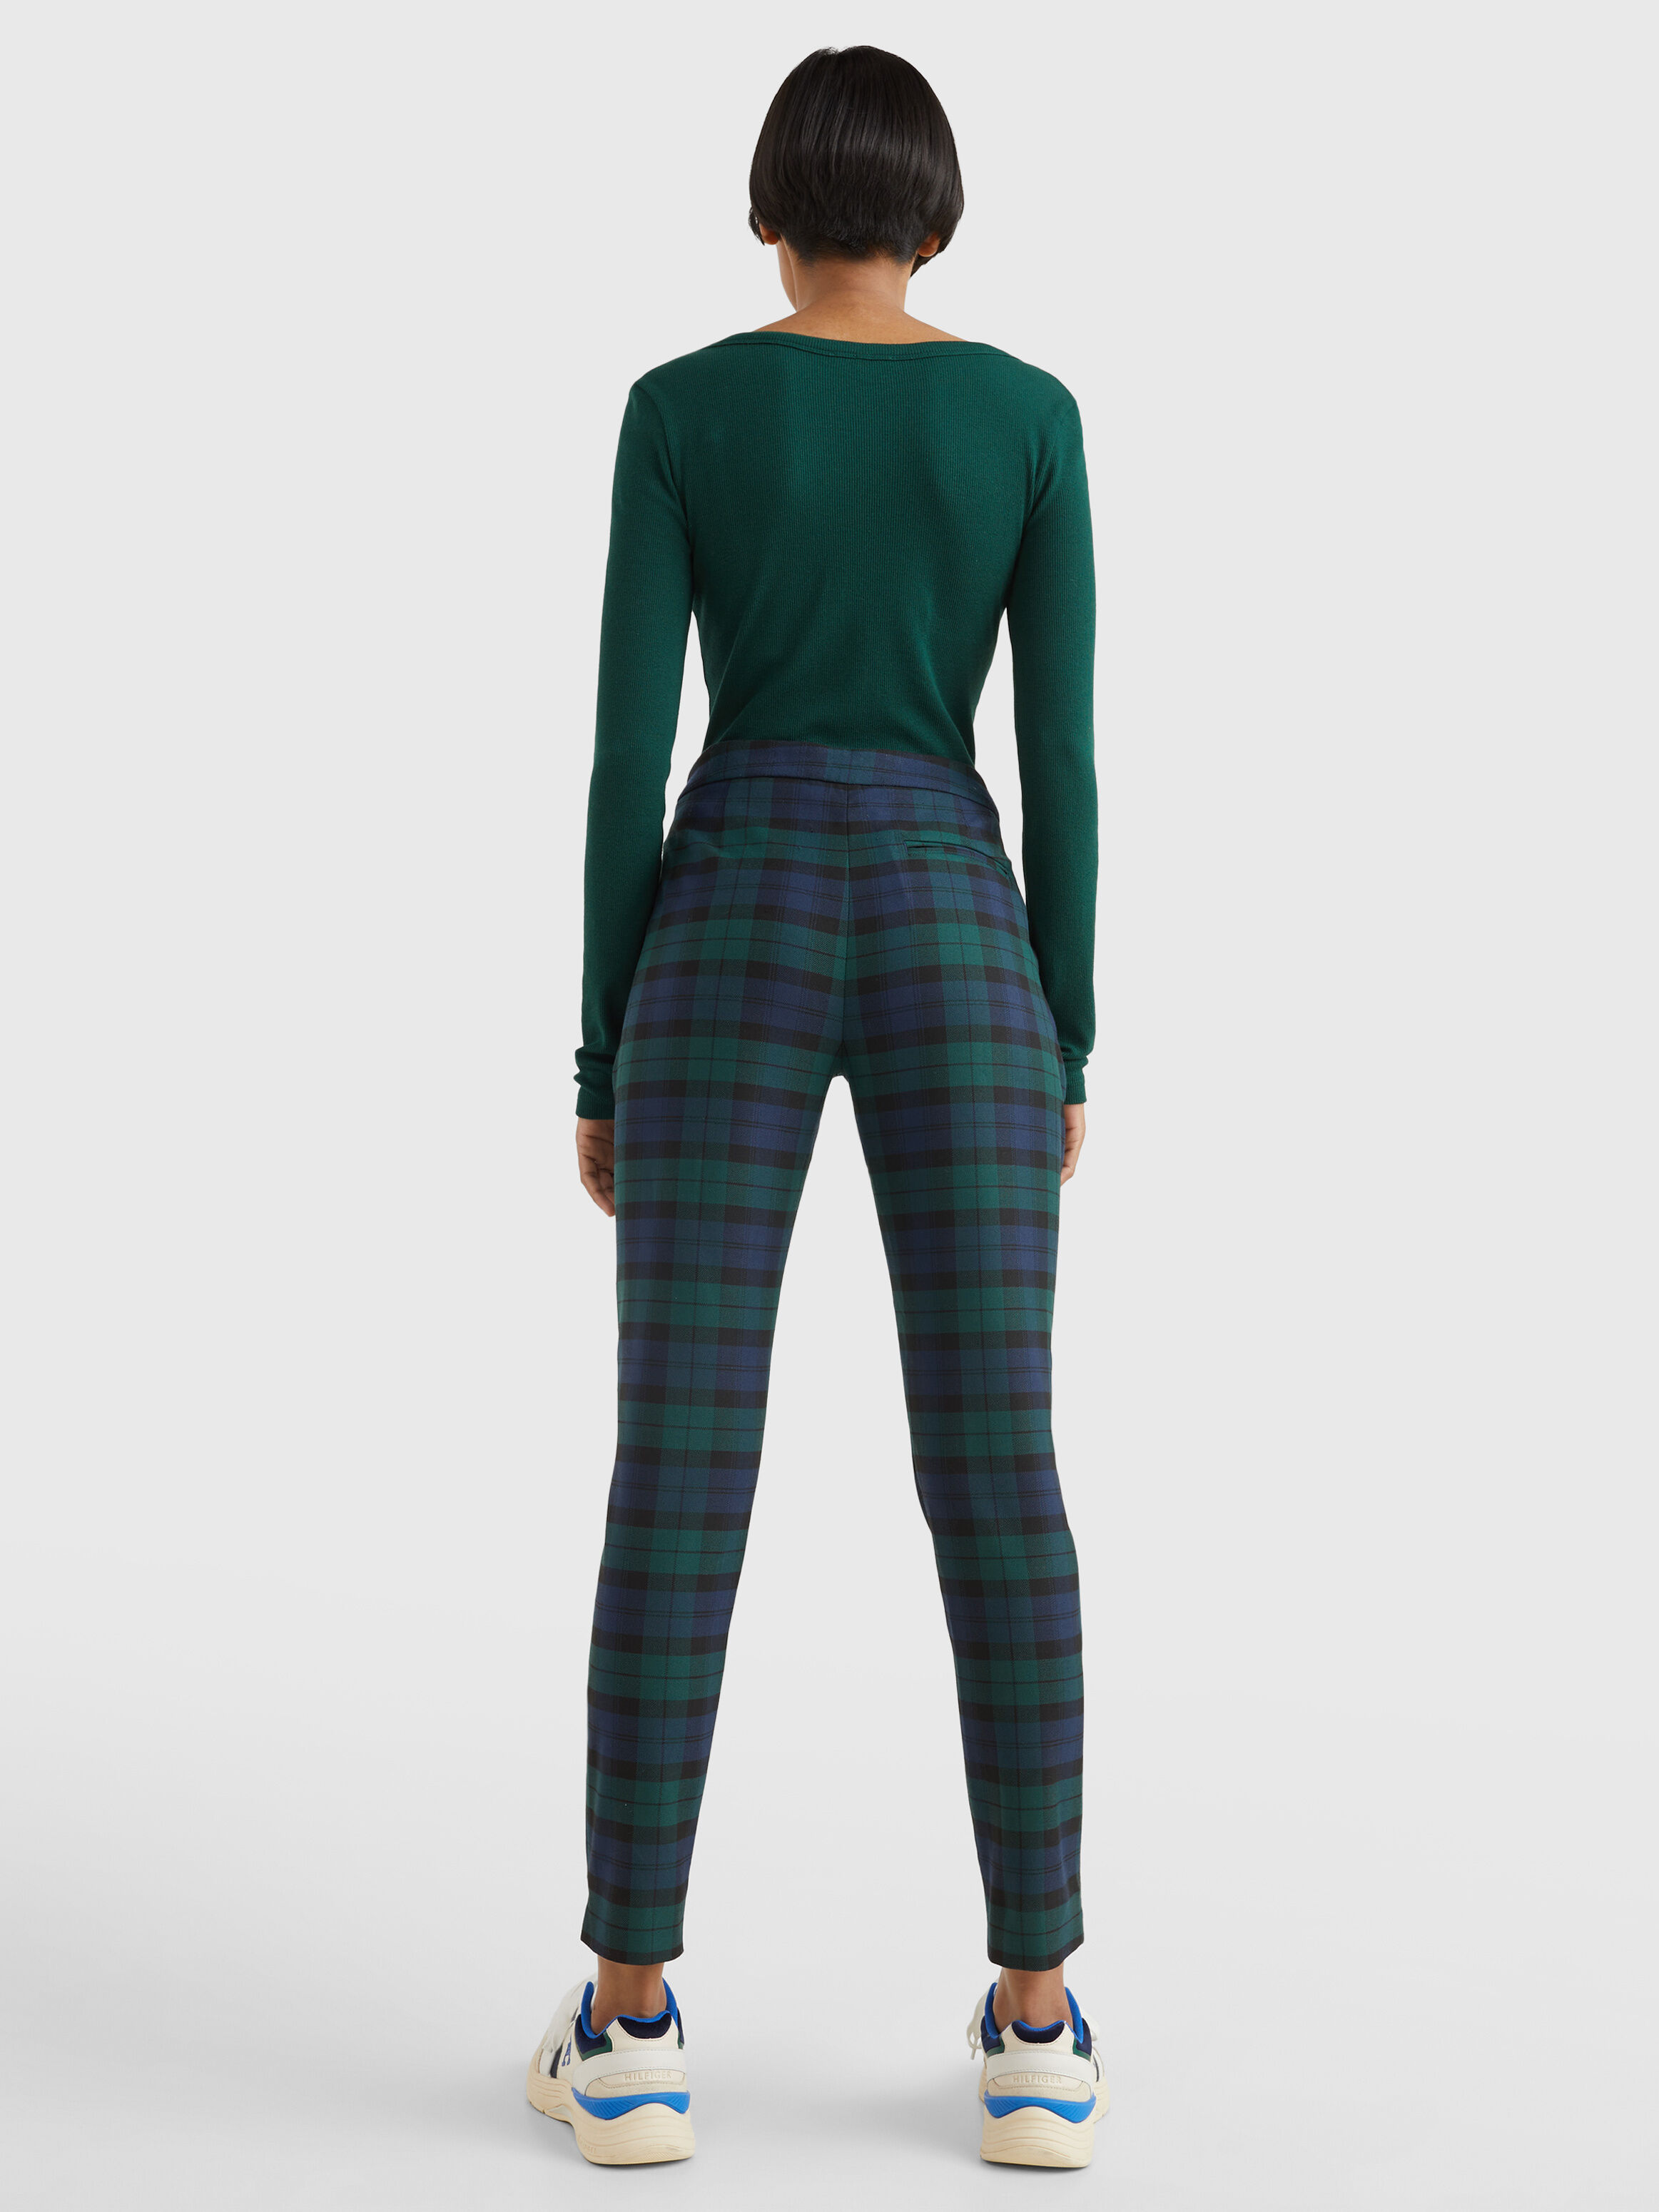 Womens TREVISO  Trousers in lamé tartan Green Pattern  MaxCo Trousers   Posaglas